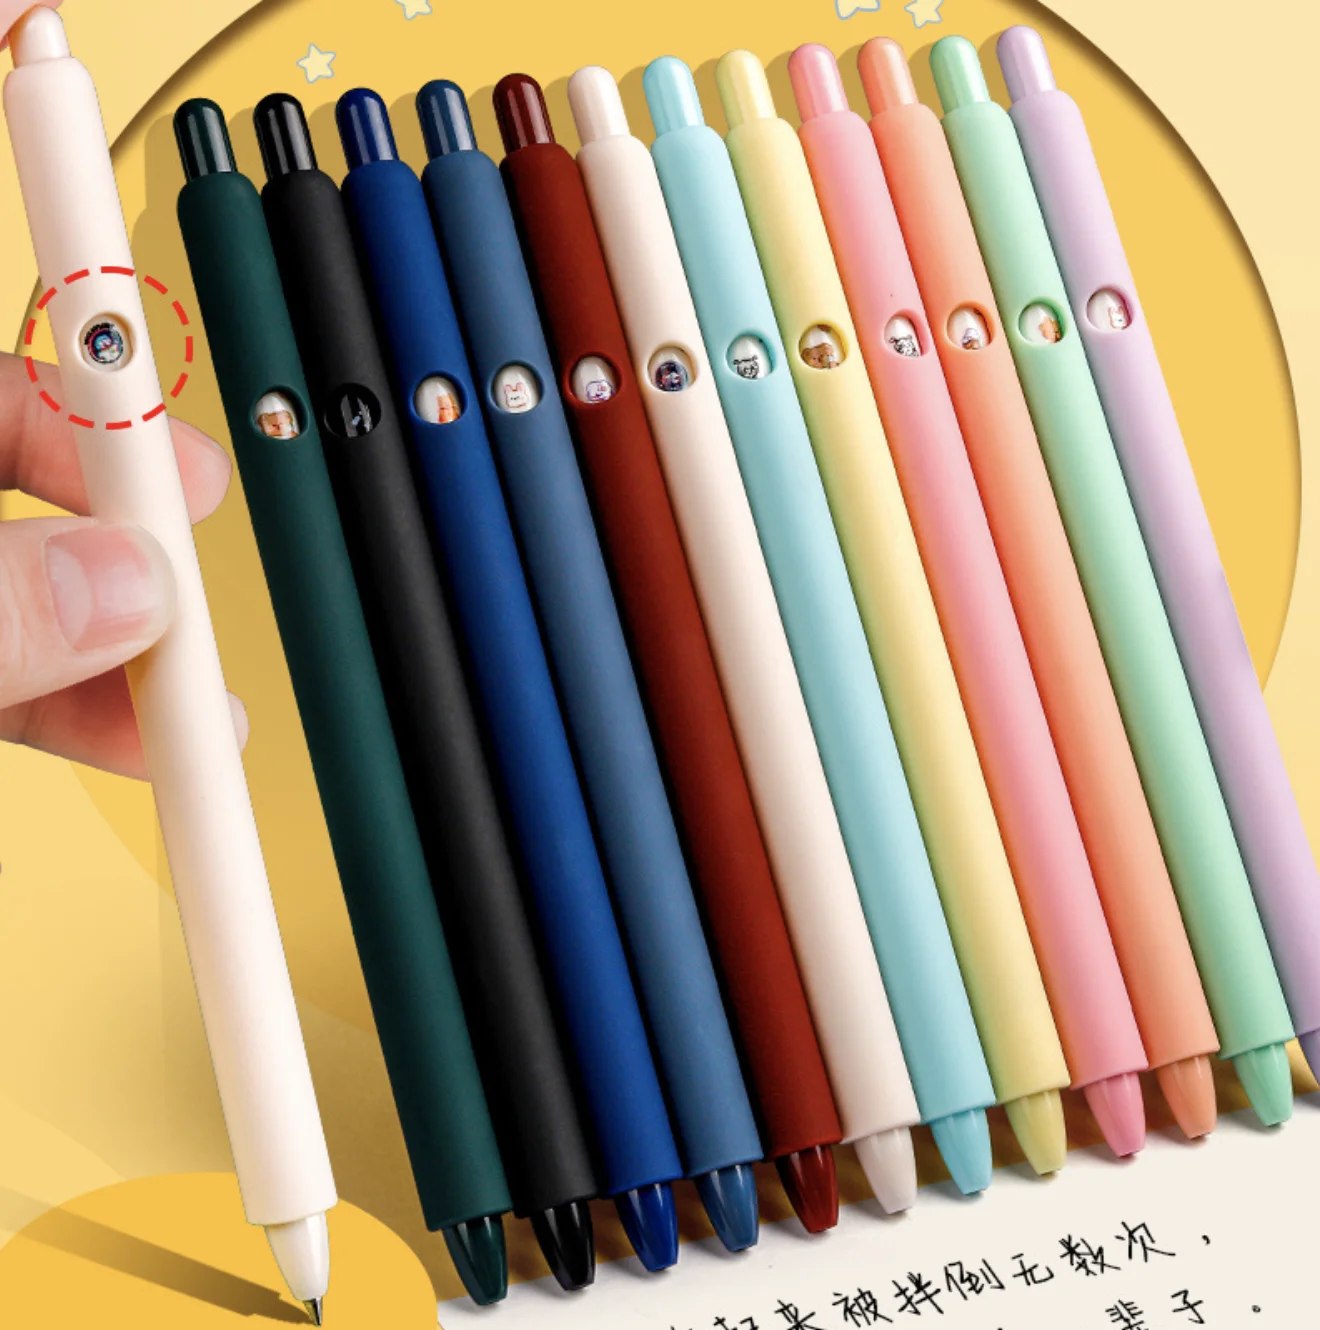 

Набор милых гелевых ручек Morandi, 6 шт., многоцветные гелевые ручки для прессования, винтажный лайнер 0,5 мм, ионизированные канцелярские принад...